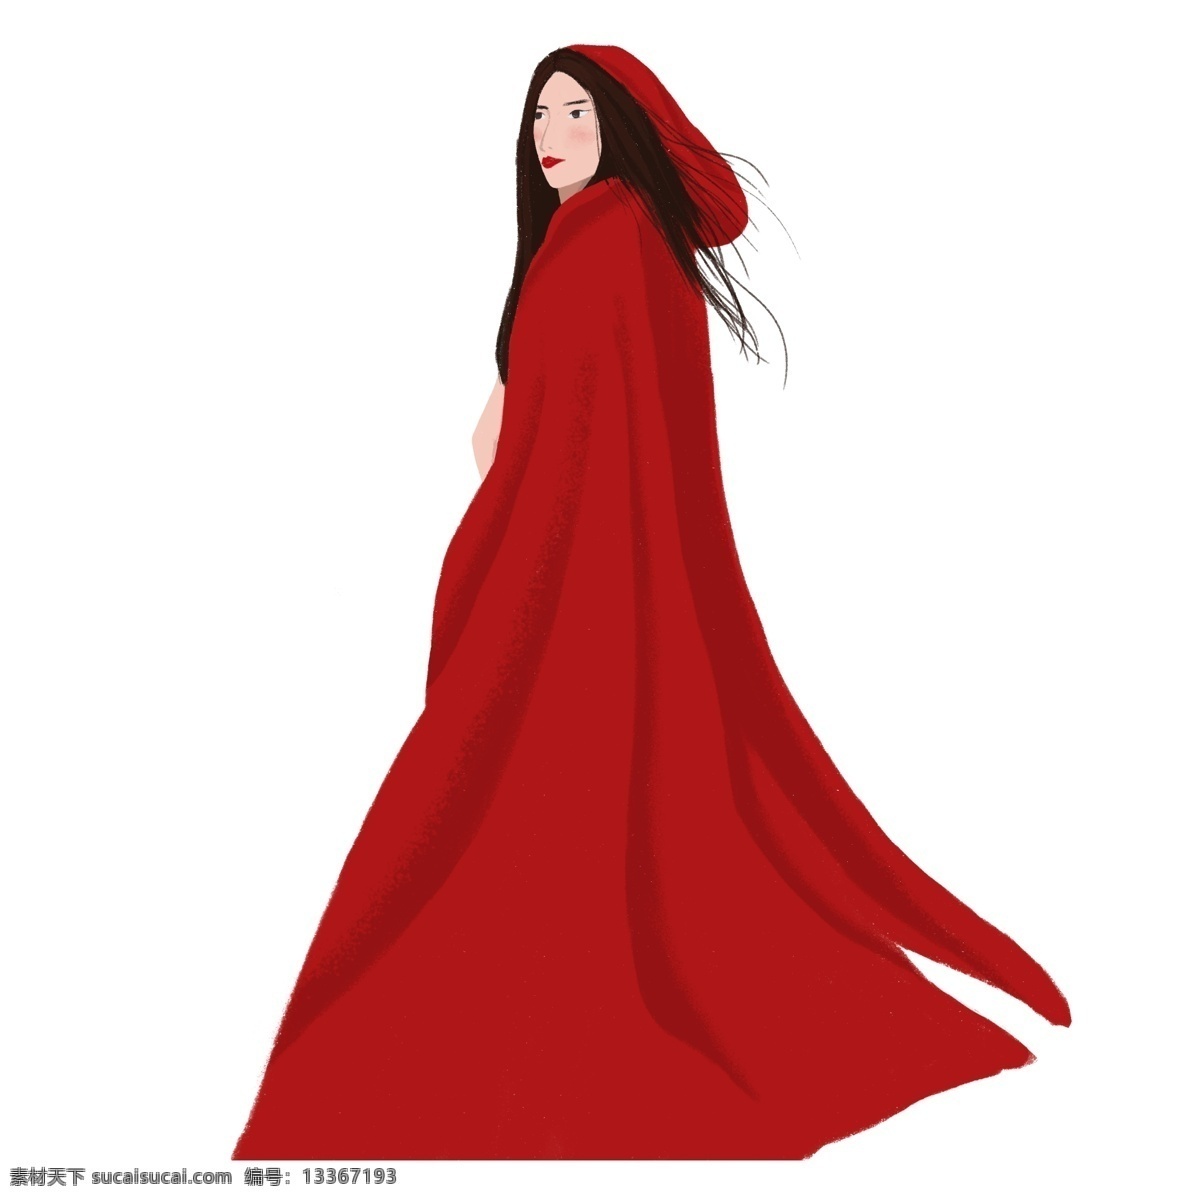 手绘 长发 红衣 美女 女人 大披风 时尚 女孩 红衣女人 红衣美女 女性 女神 红衣少女 红色